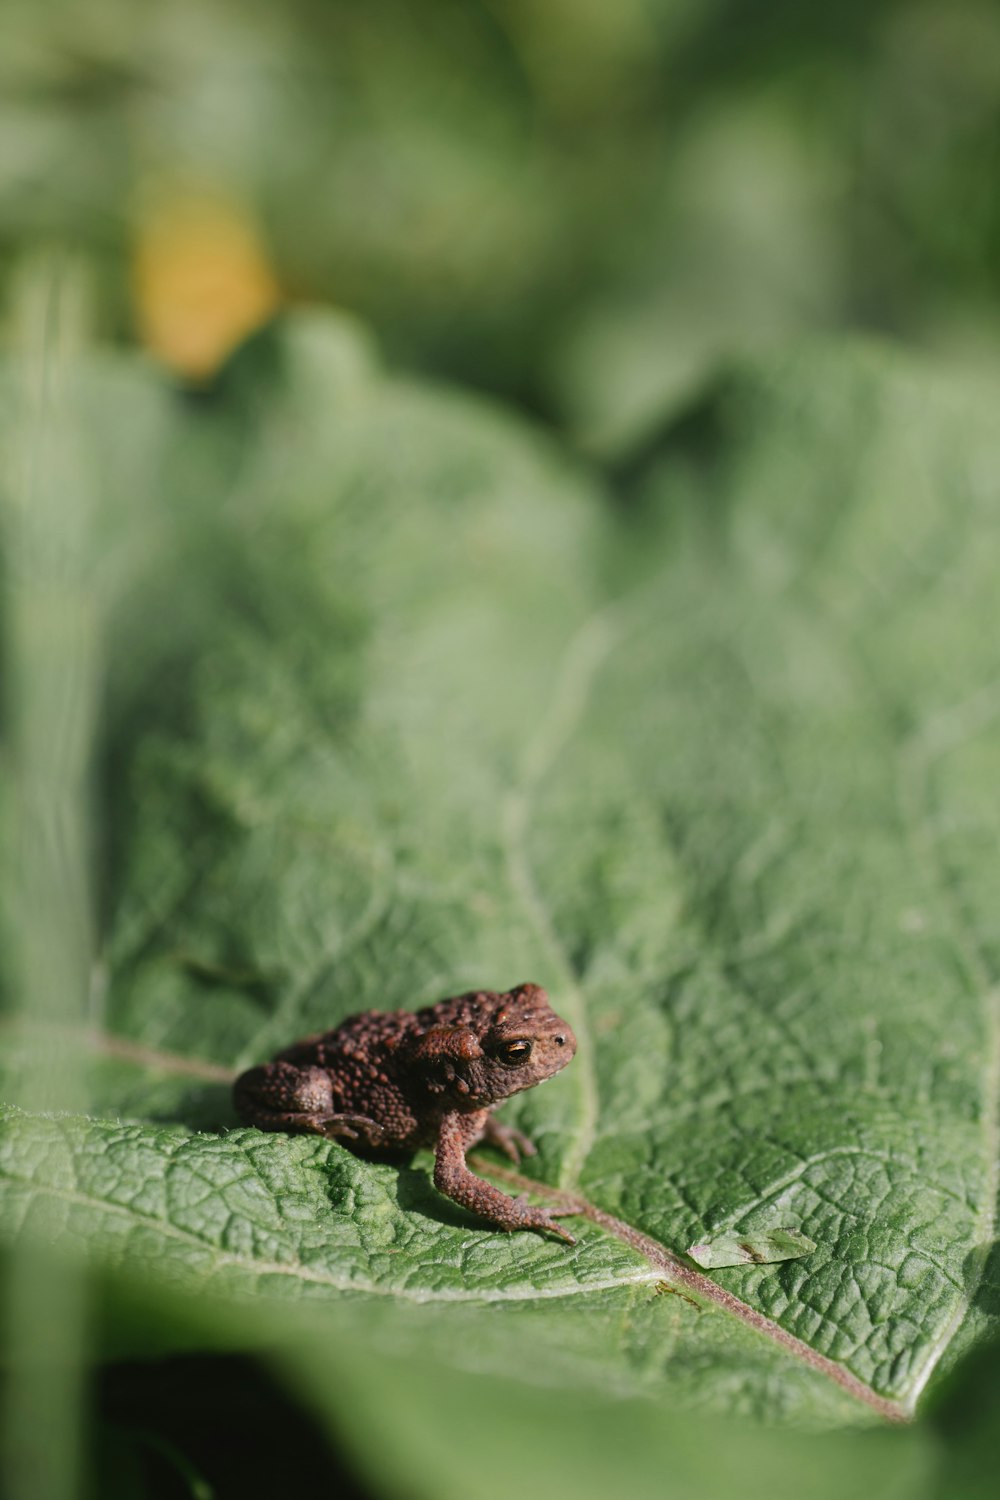 brown frog on green leaf